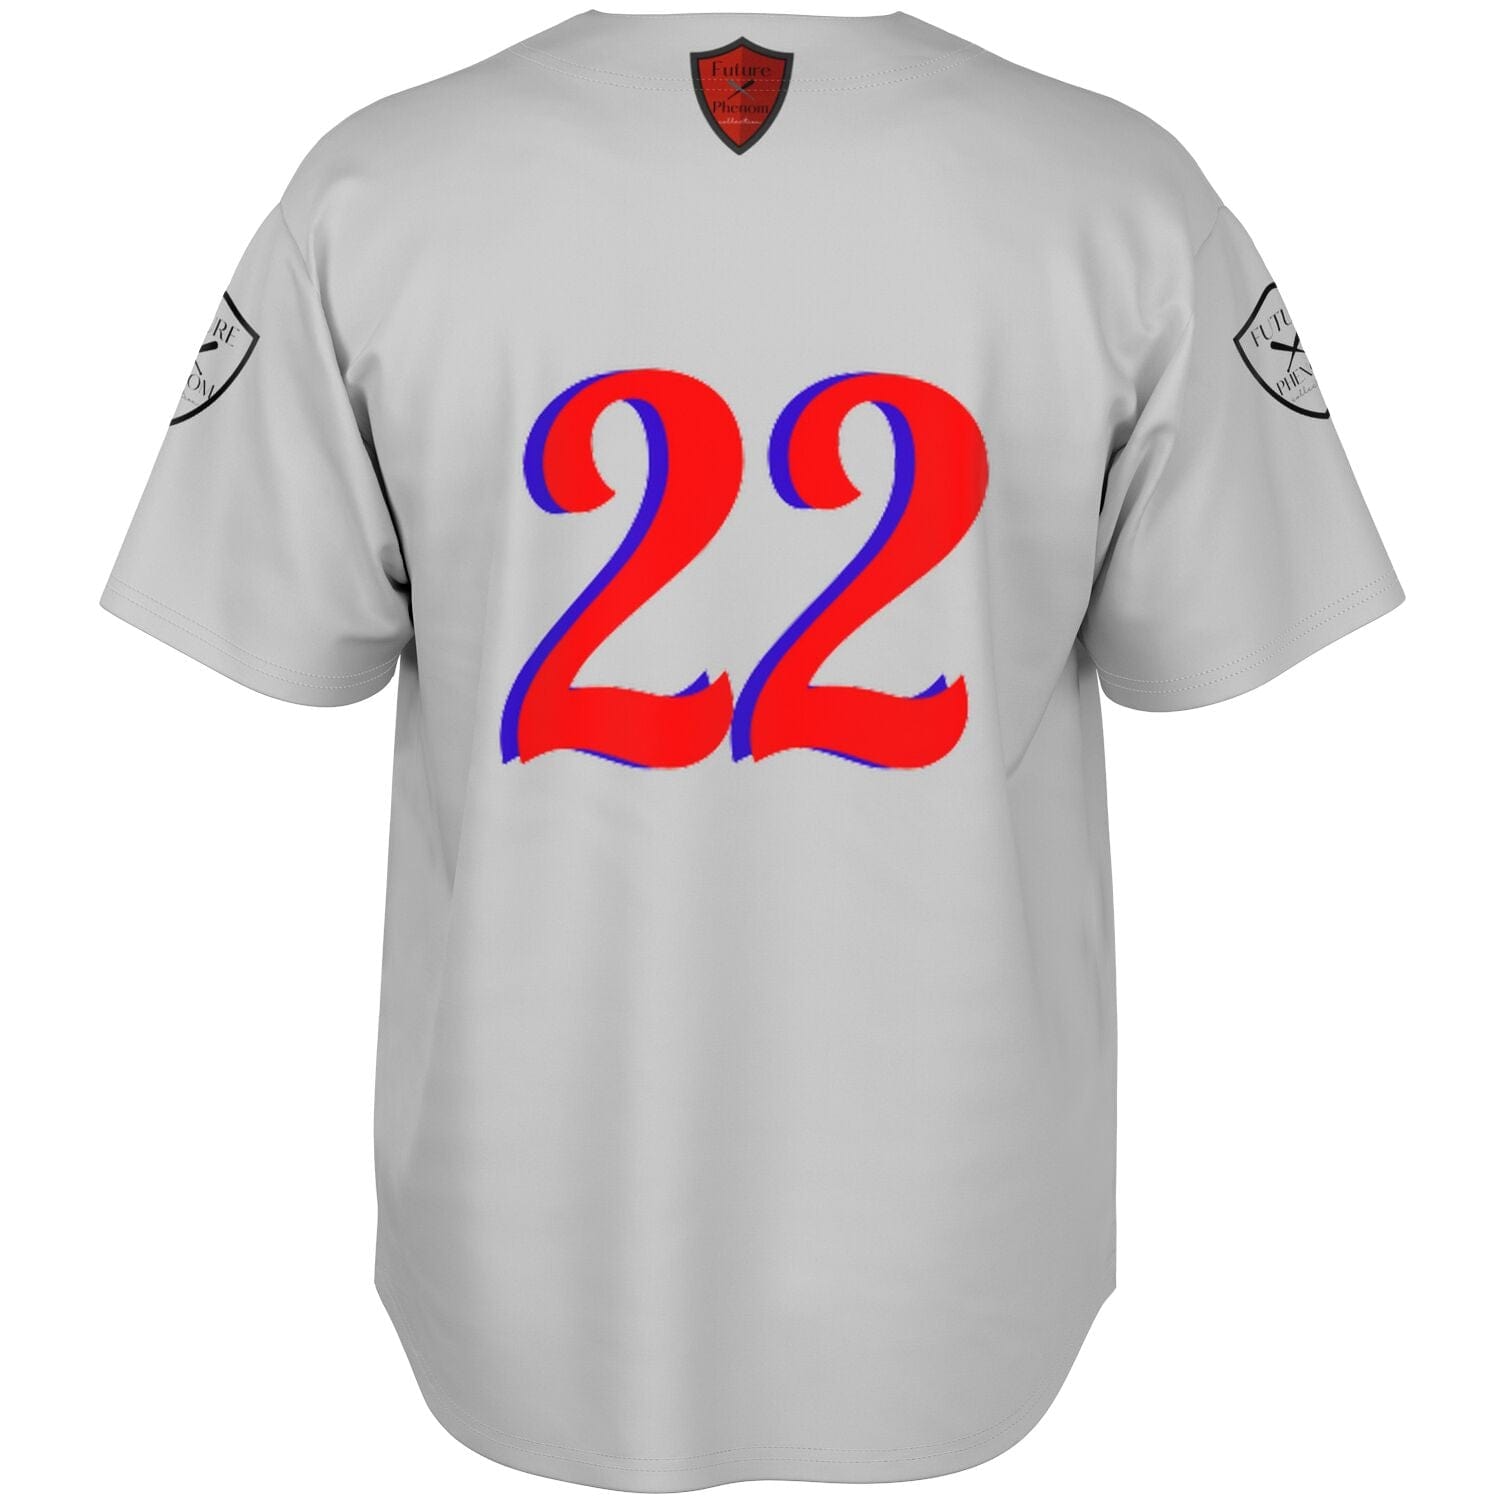 Baseball Jersey - AOP Ebbets Field away game uniform